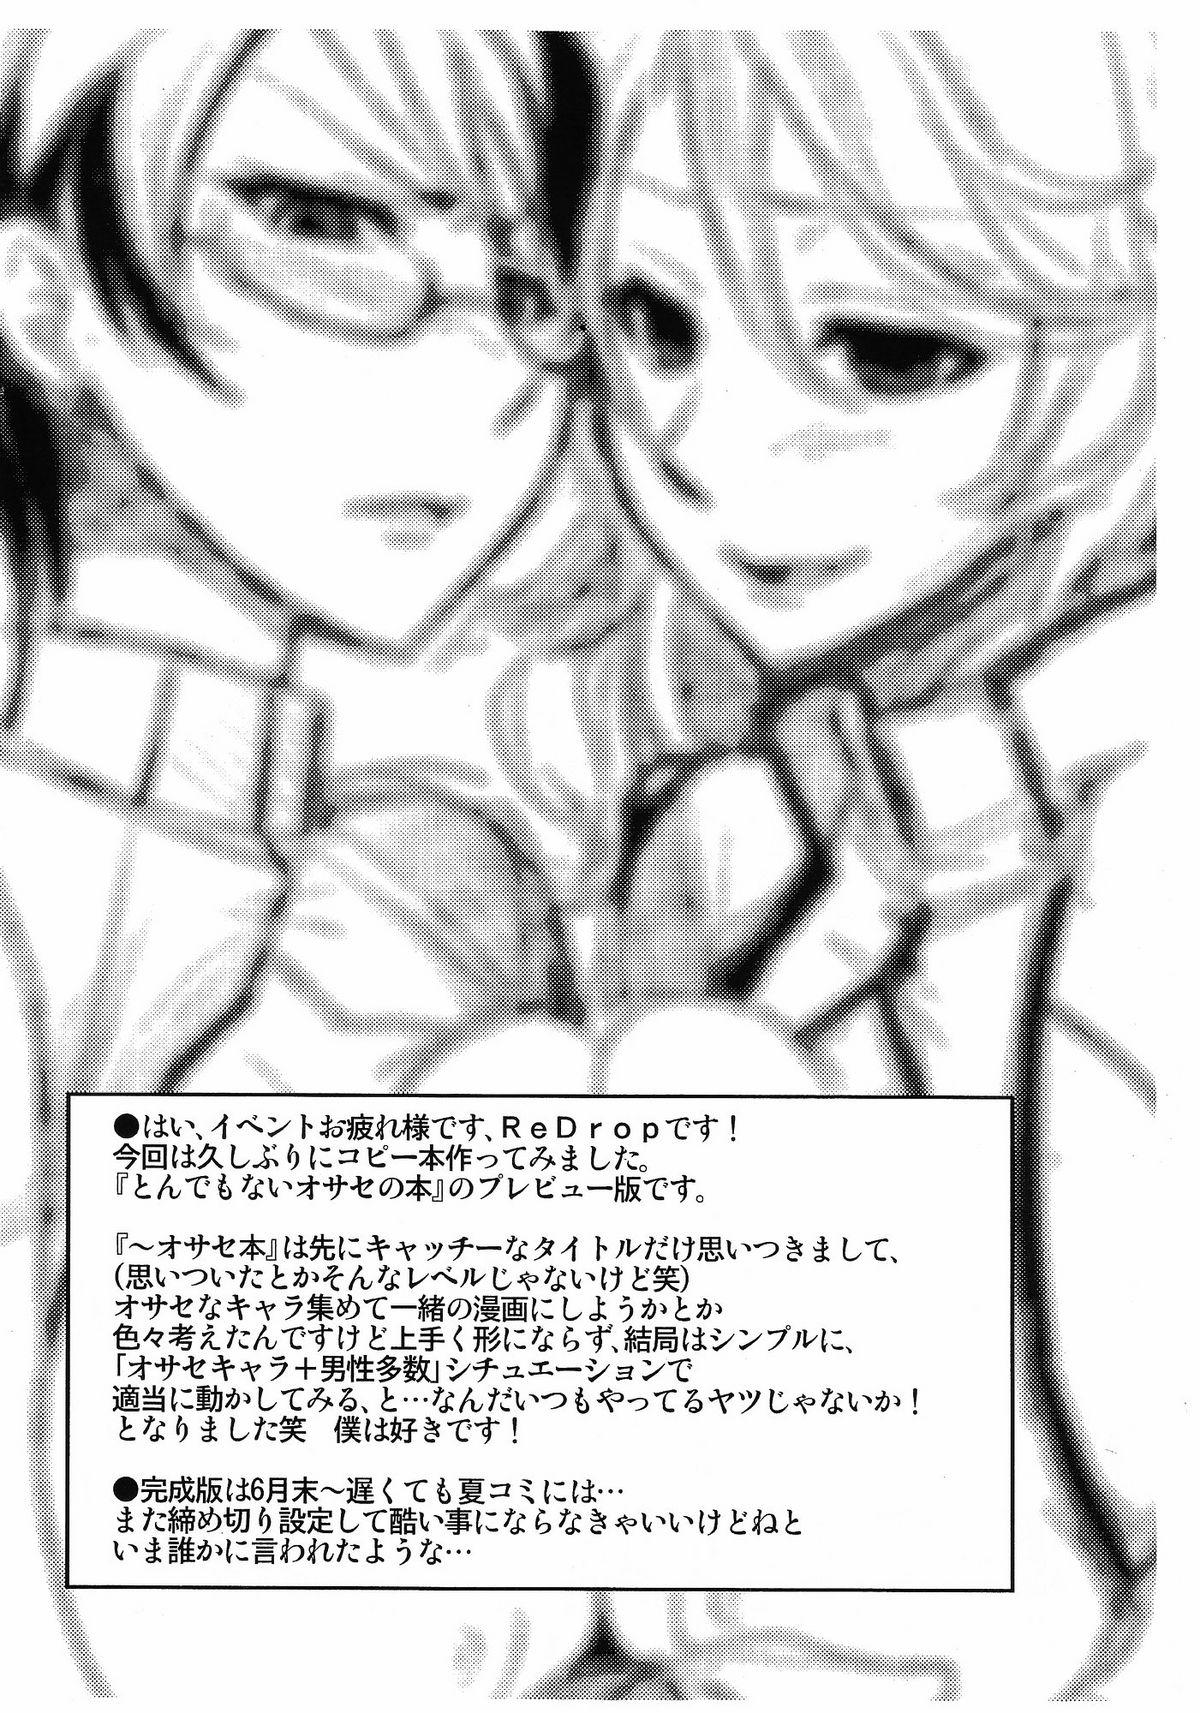 Moan Tondemonai Osase no Hon PREVIEW Ban - Gundam 00 Gay Cash - Page 2